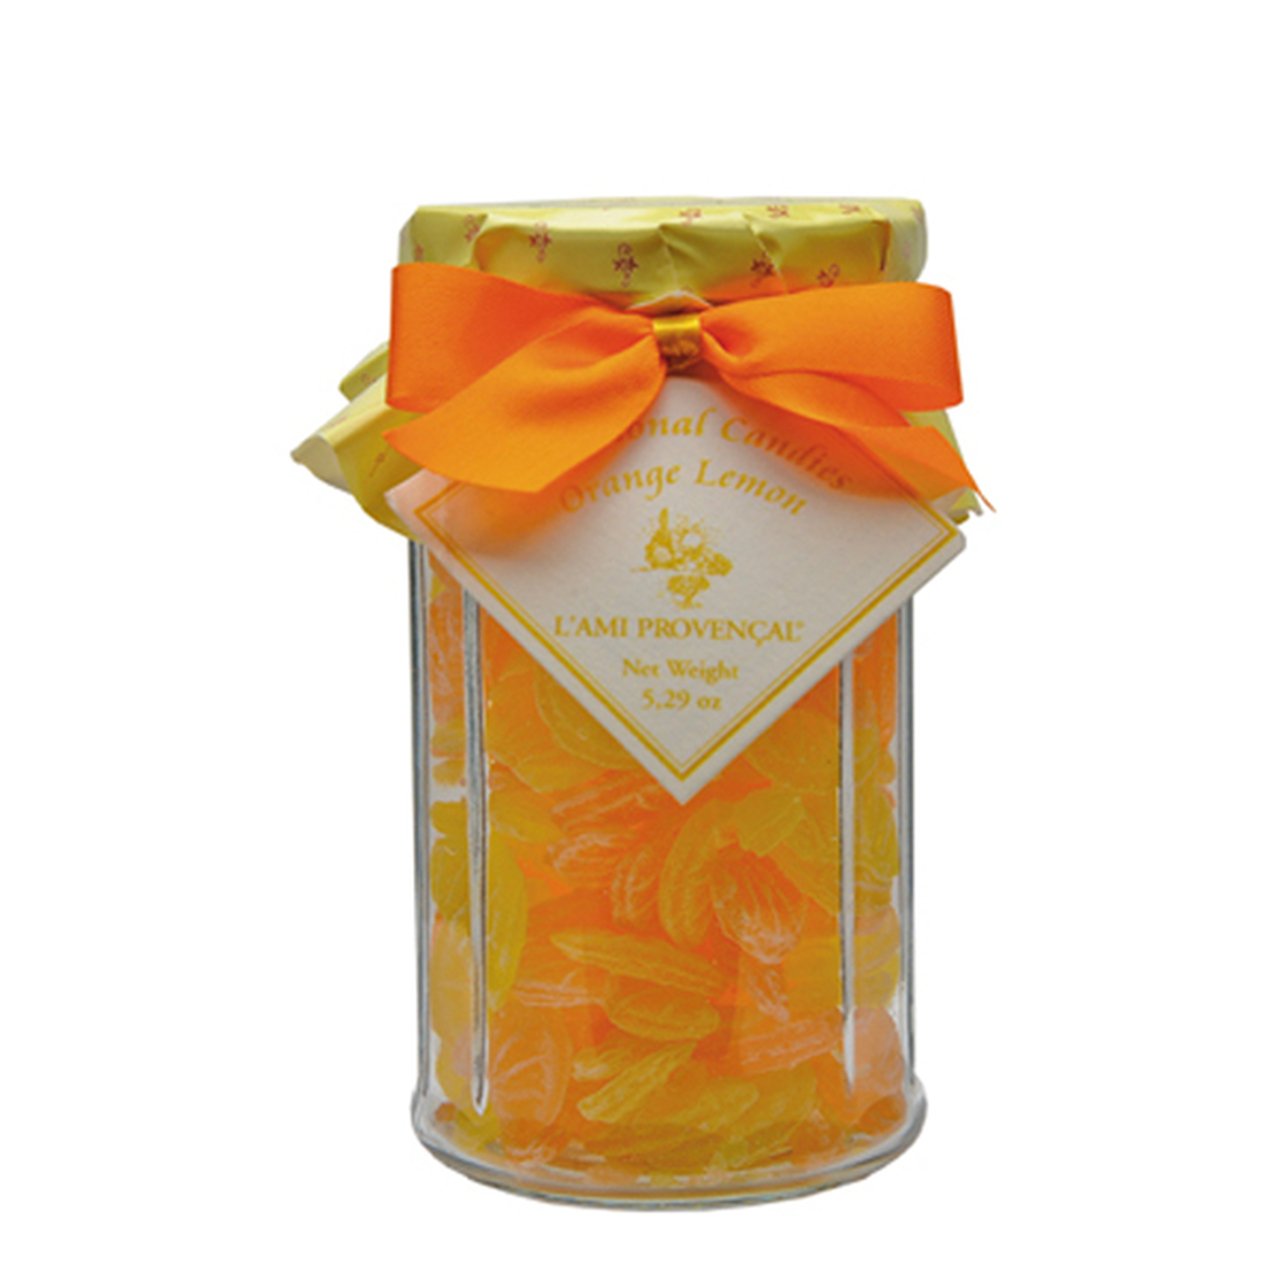 L'Ami Provencal Citrus Candies, FRANCE